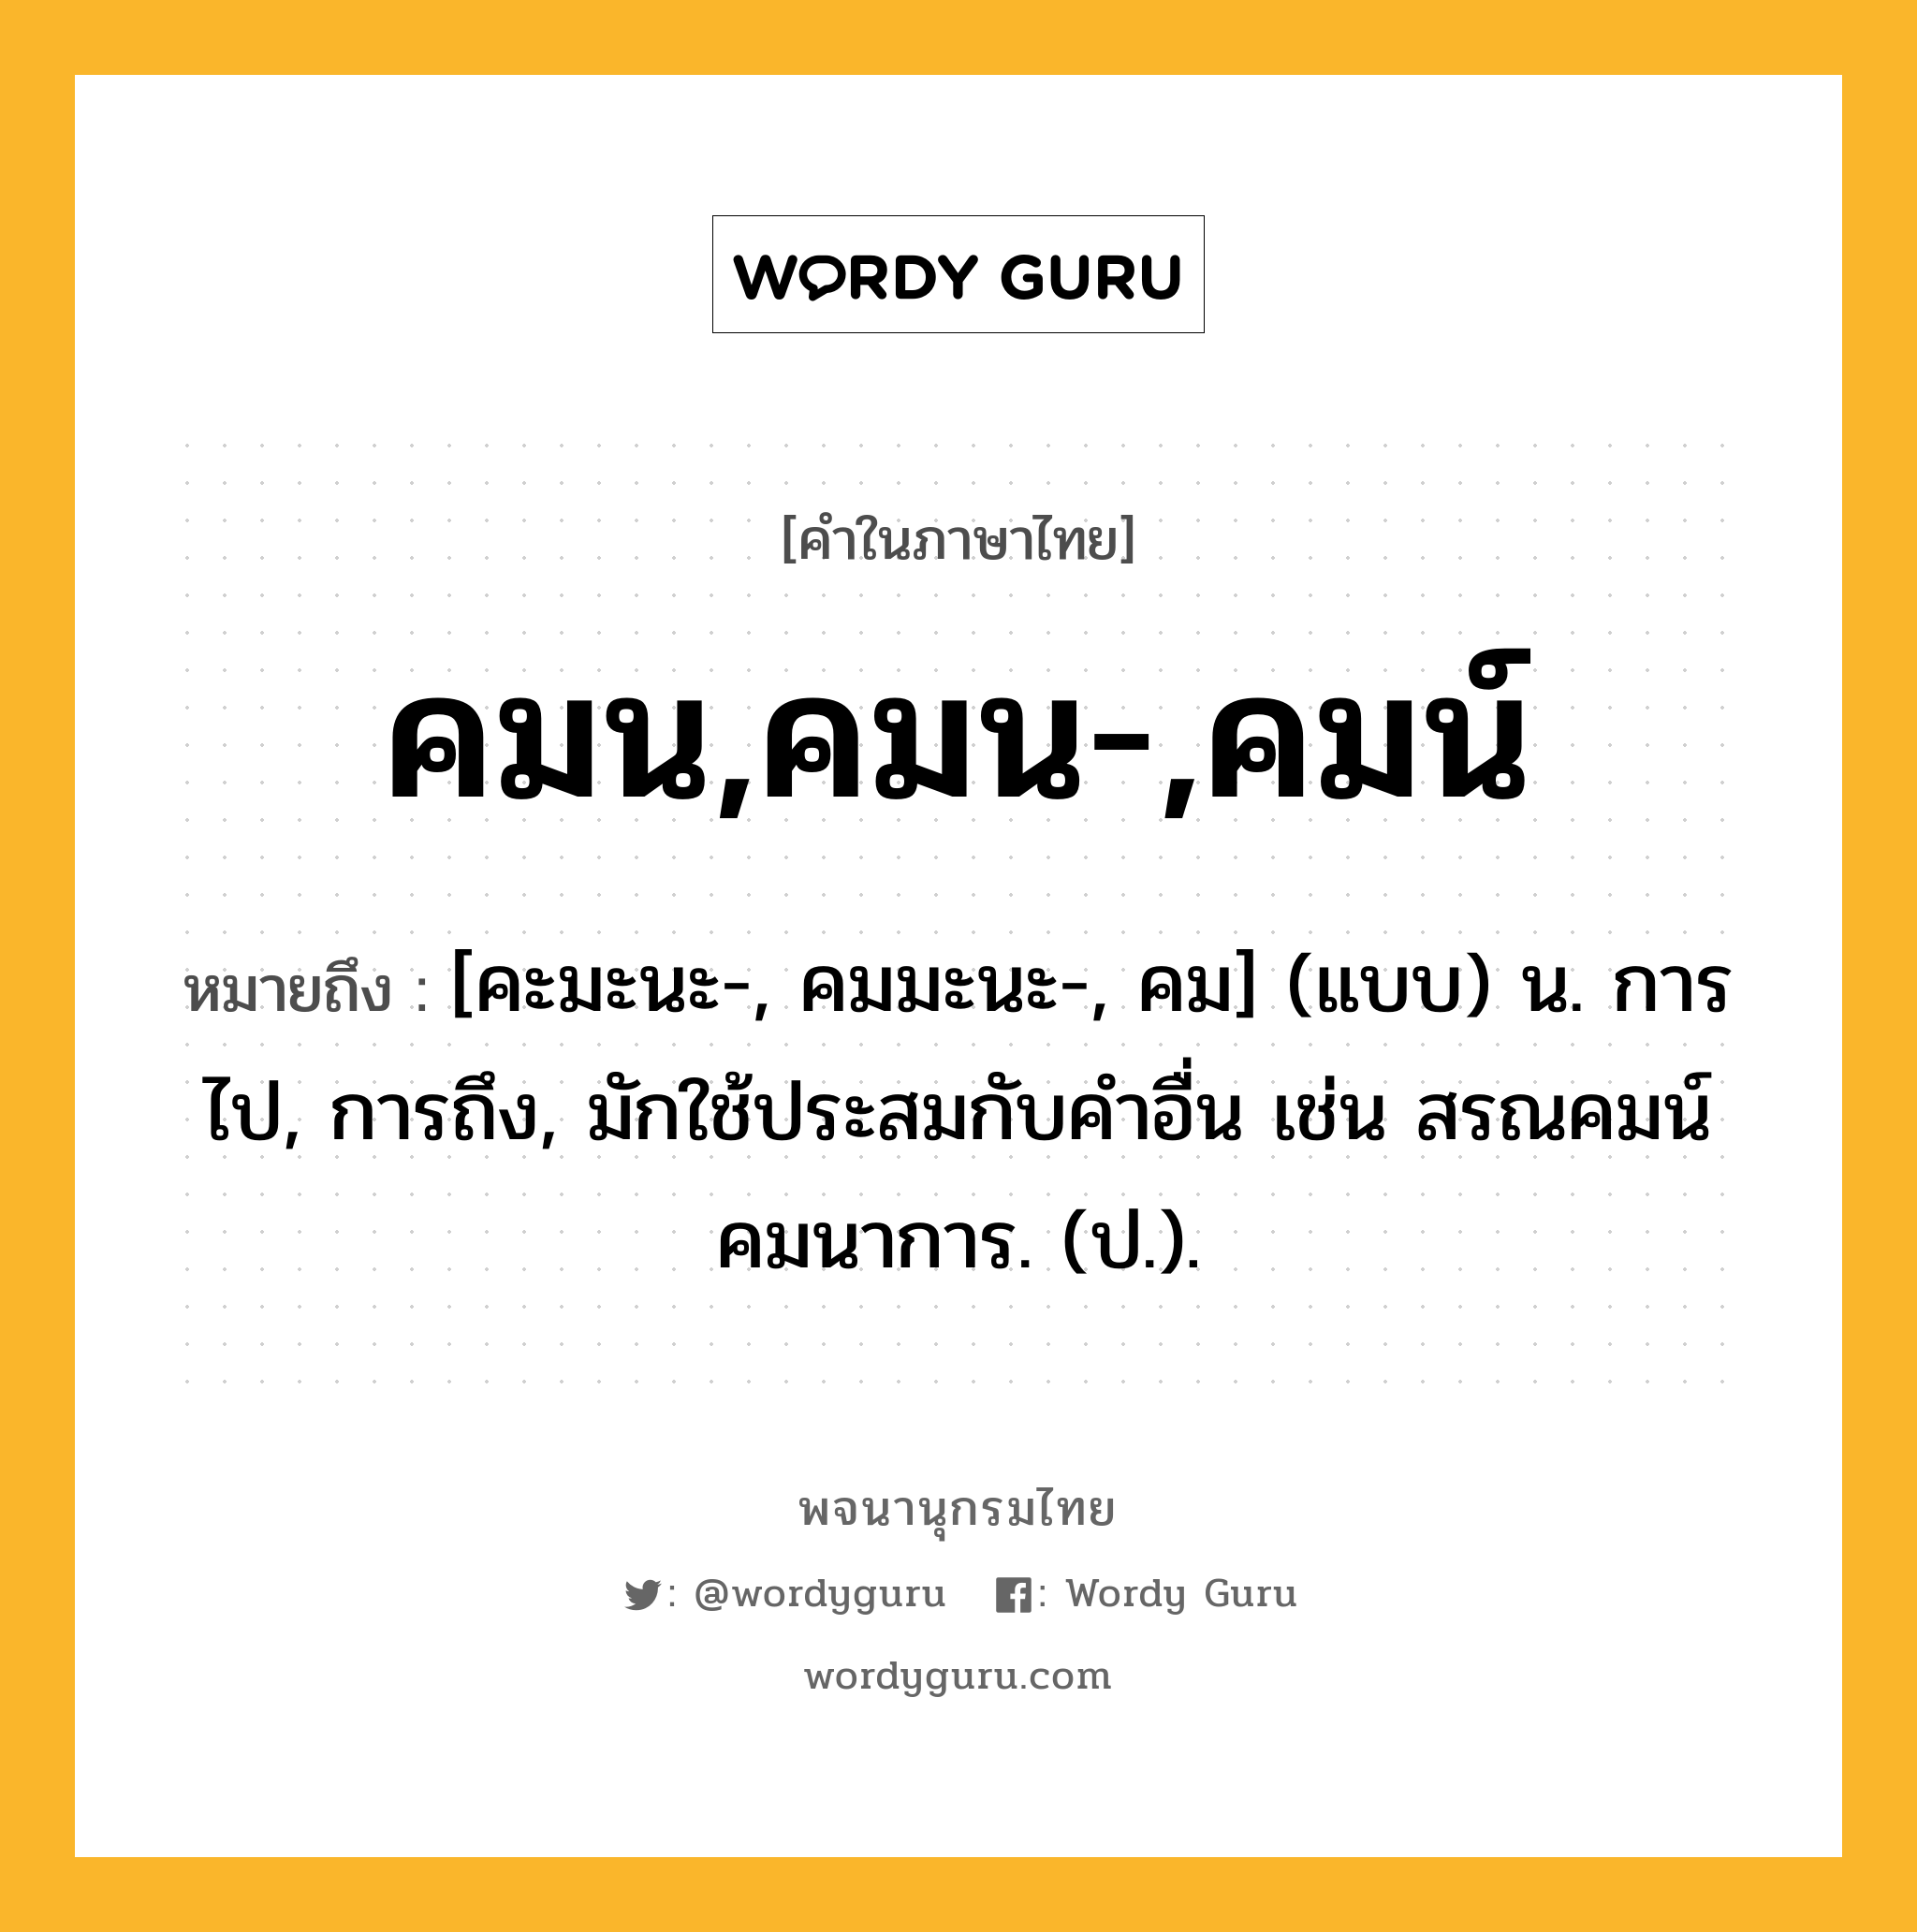 คมน,คมน-,คมน์ หมายถึงอะไร?, คำในภาษาไทย คมน,คมน-,คมน์ หมายถึง [คะมะนะ-, คมมะนะ-, คม] (แบบ) น. การไป, การถึง, มักใช้ประสมกับคําอื่น เช่น สรณคมน์ คมนาการ. (ป.).